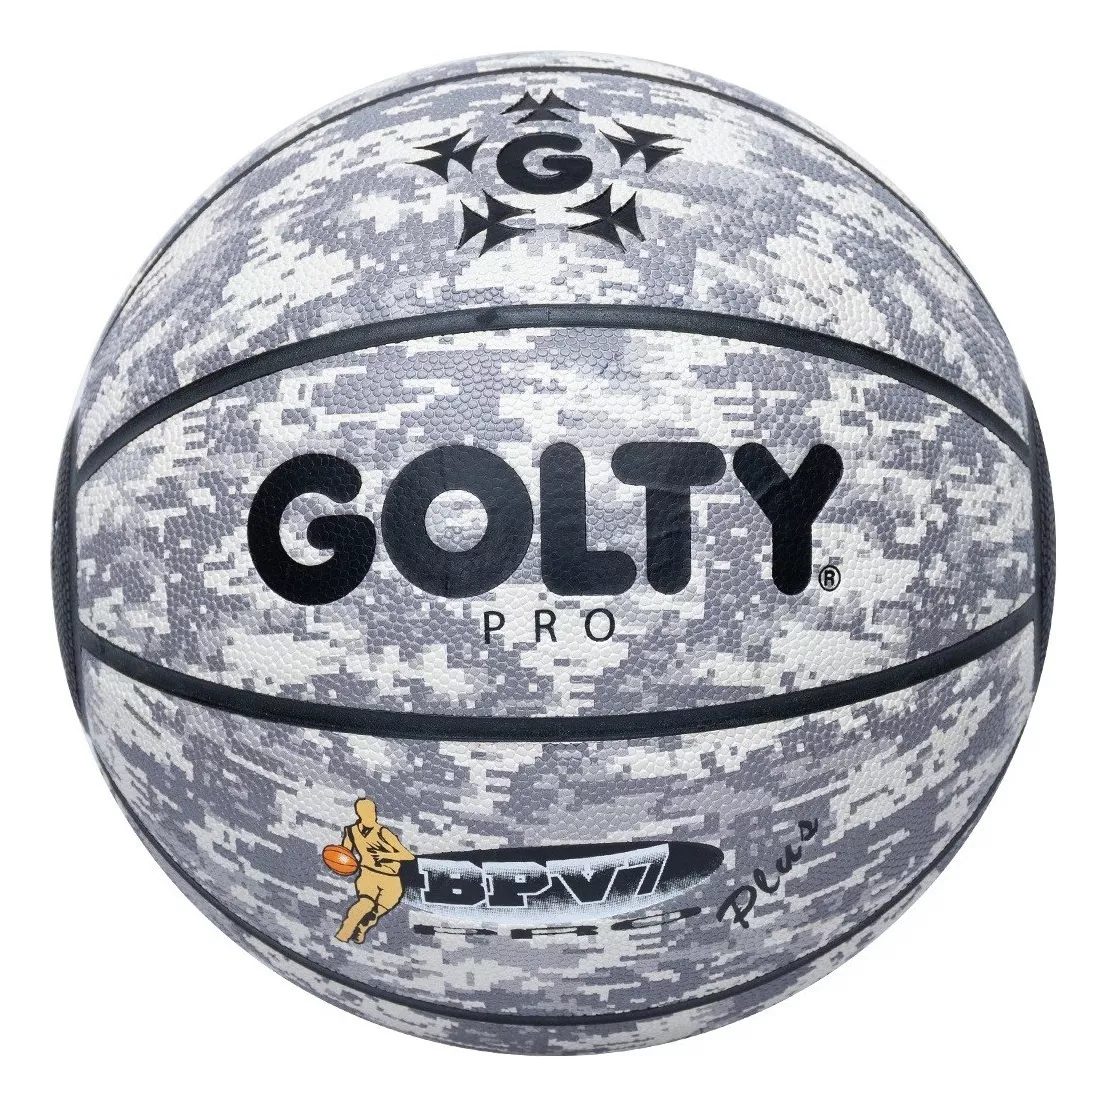 Primera imagen para búsqueda de balon baloncesto golty 7